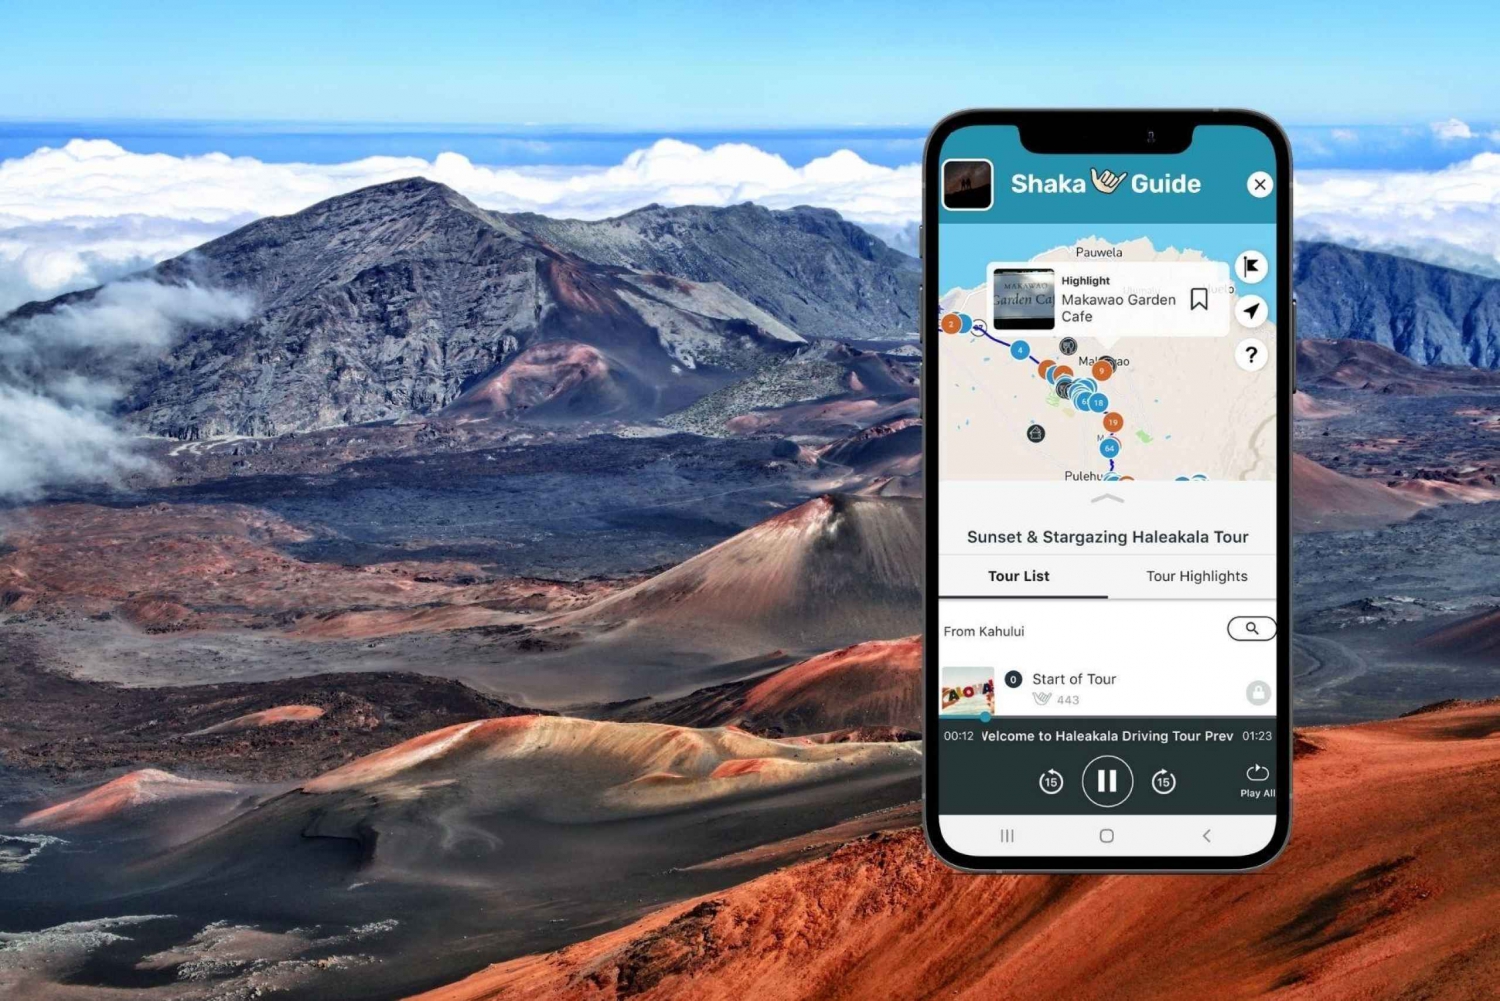 Pôr do sol no Parque Nacional Haleakala: Guia de turismo em áudio